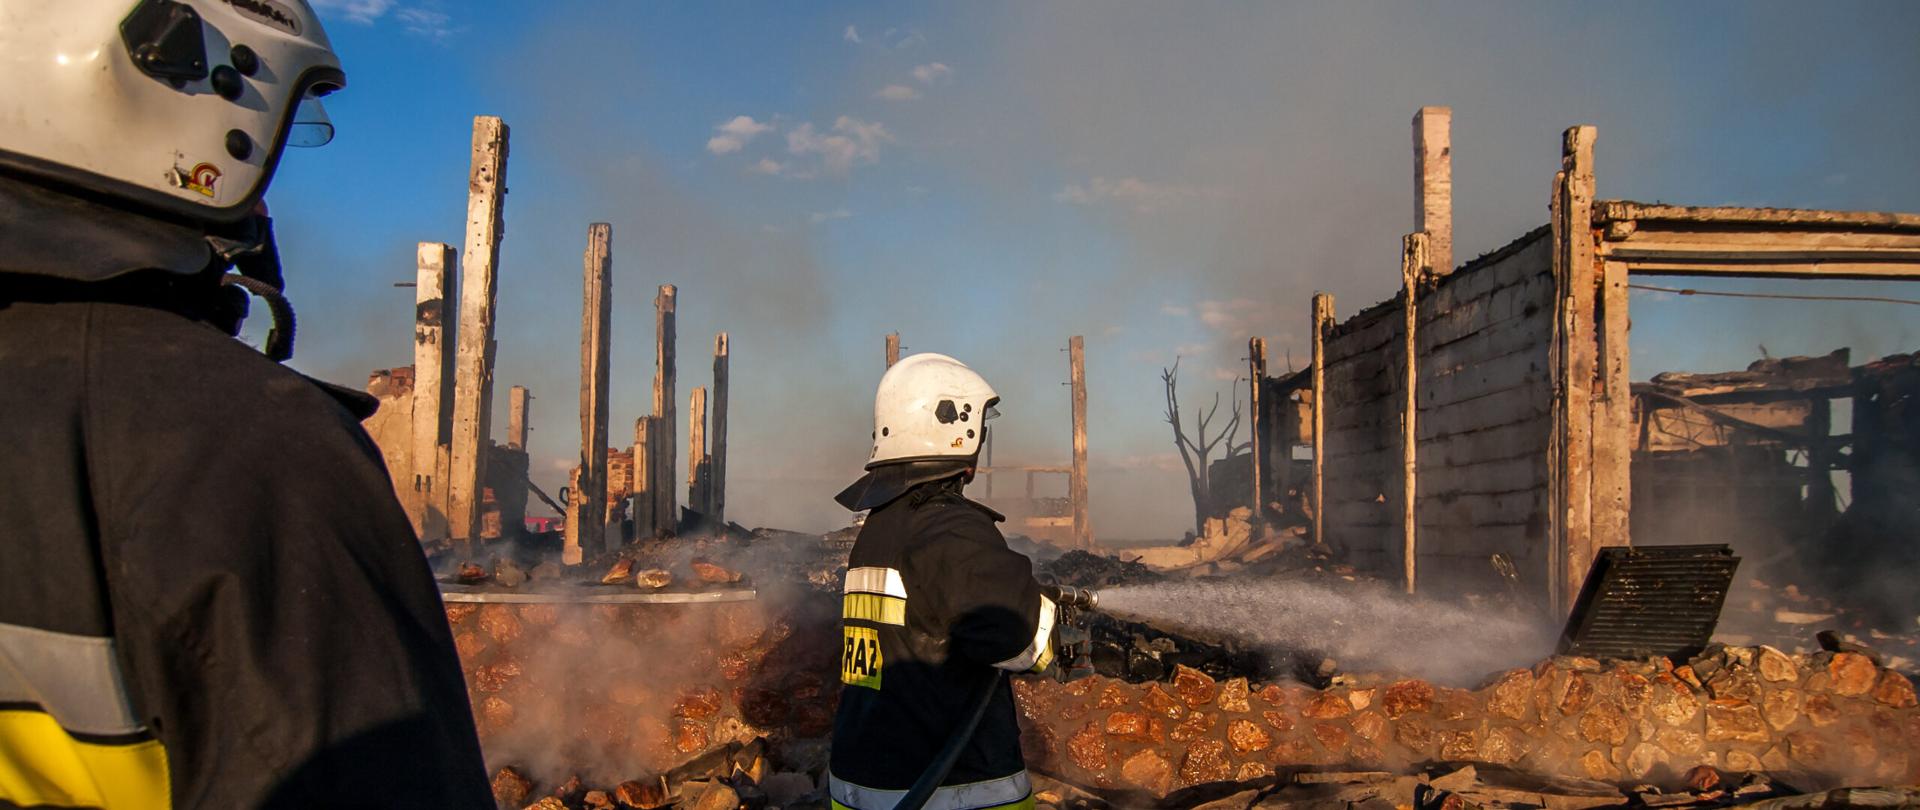 Zdjęcie przedstawia dwóch strażaków (w ubraniu specjalnym strażackim koloru czarnego z białymi hełmami na głowach) podczas gaszenia pożaru zgliszcz domu mieszkalnego. Obie postacie obrócone tyłem do fotografującego sfotografowane podczas słonecznego dnia blisko zachodu słońca.
W lewej części kadru stoi strażak OSP (pomocnik przodownika roty) trzymający odcinek strażacki wypełniony wodą. W centralnej części zdjęcia, strażak OSP trzymający prądownicę pistoletową, gasi prądem wody rozproszonej pozostałości po pożarze budynku mieszkalnego. Na drugim planie pozostałości betonowe (słupy i płyty betonowe stanowiące ściany) po konstrukcji budynku. W środkowej części na drugim planie widoczne mury wykonane z kamienia wysokości około 0,5 metra.